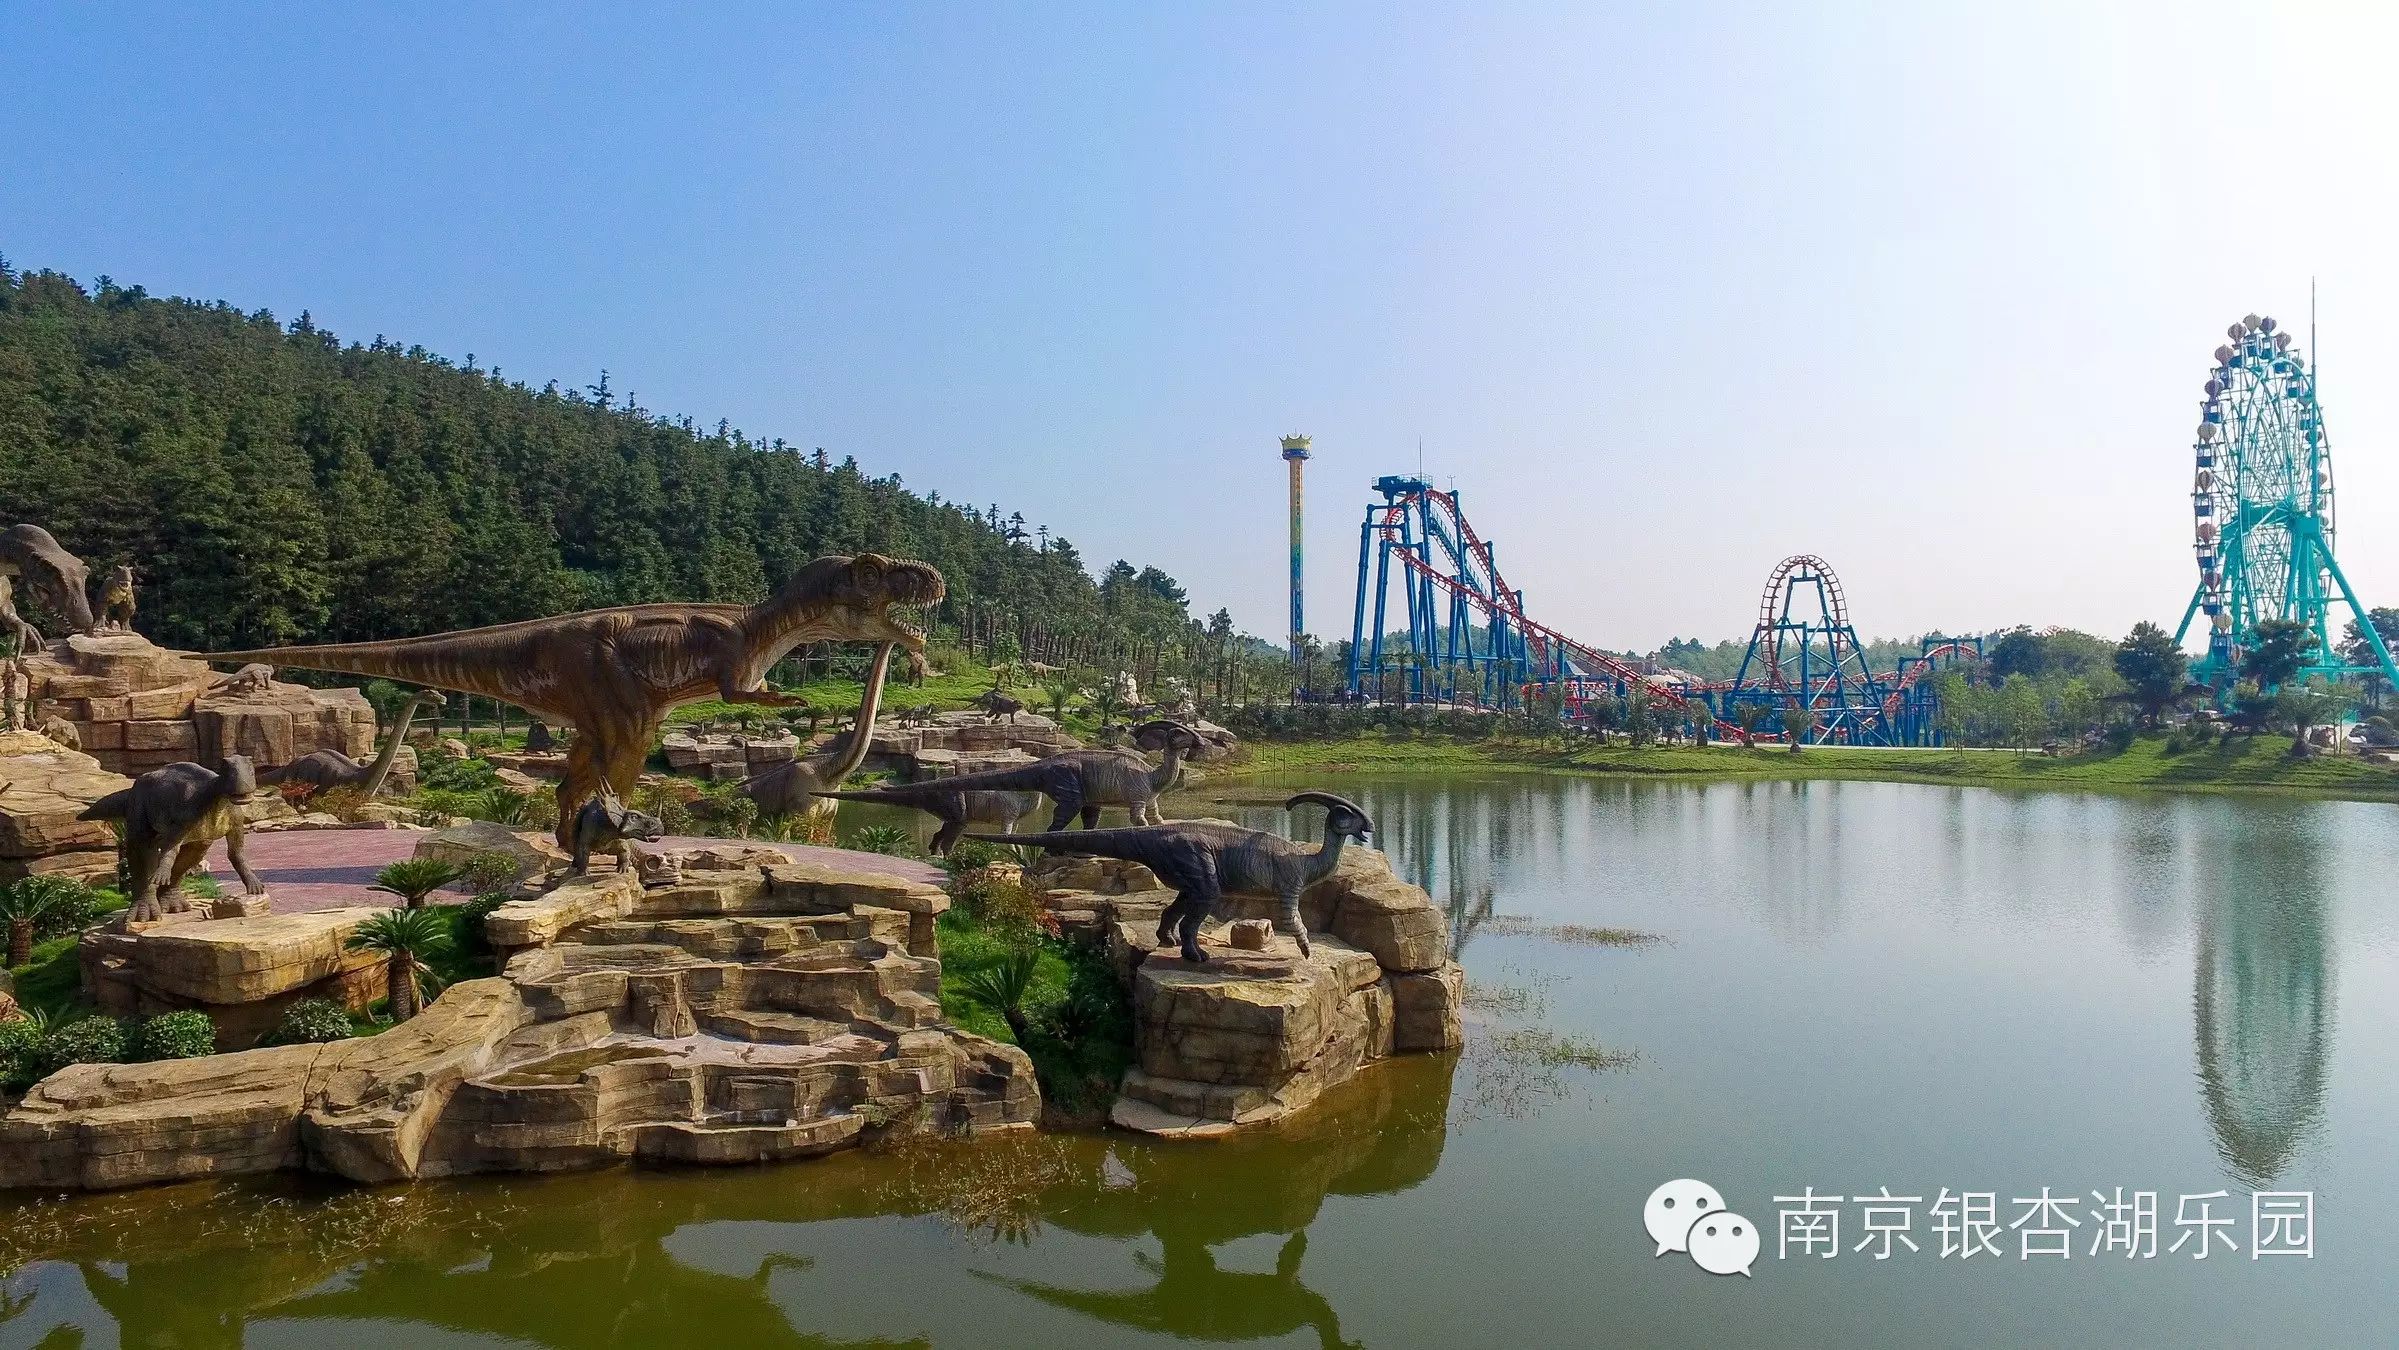 南京首个大型主题乐园,银杏湖乐园10月21日开园啦!